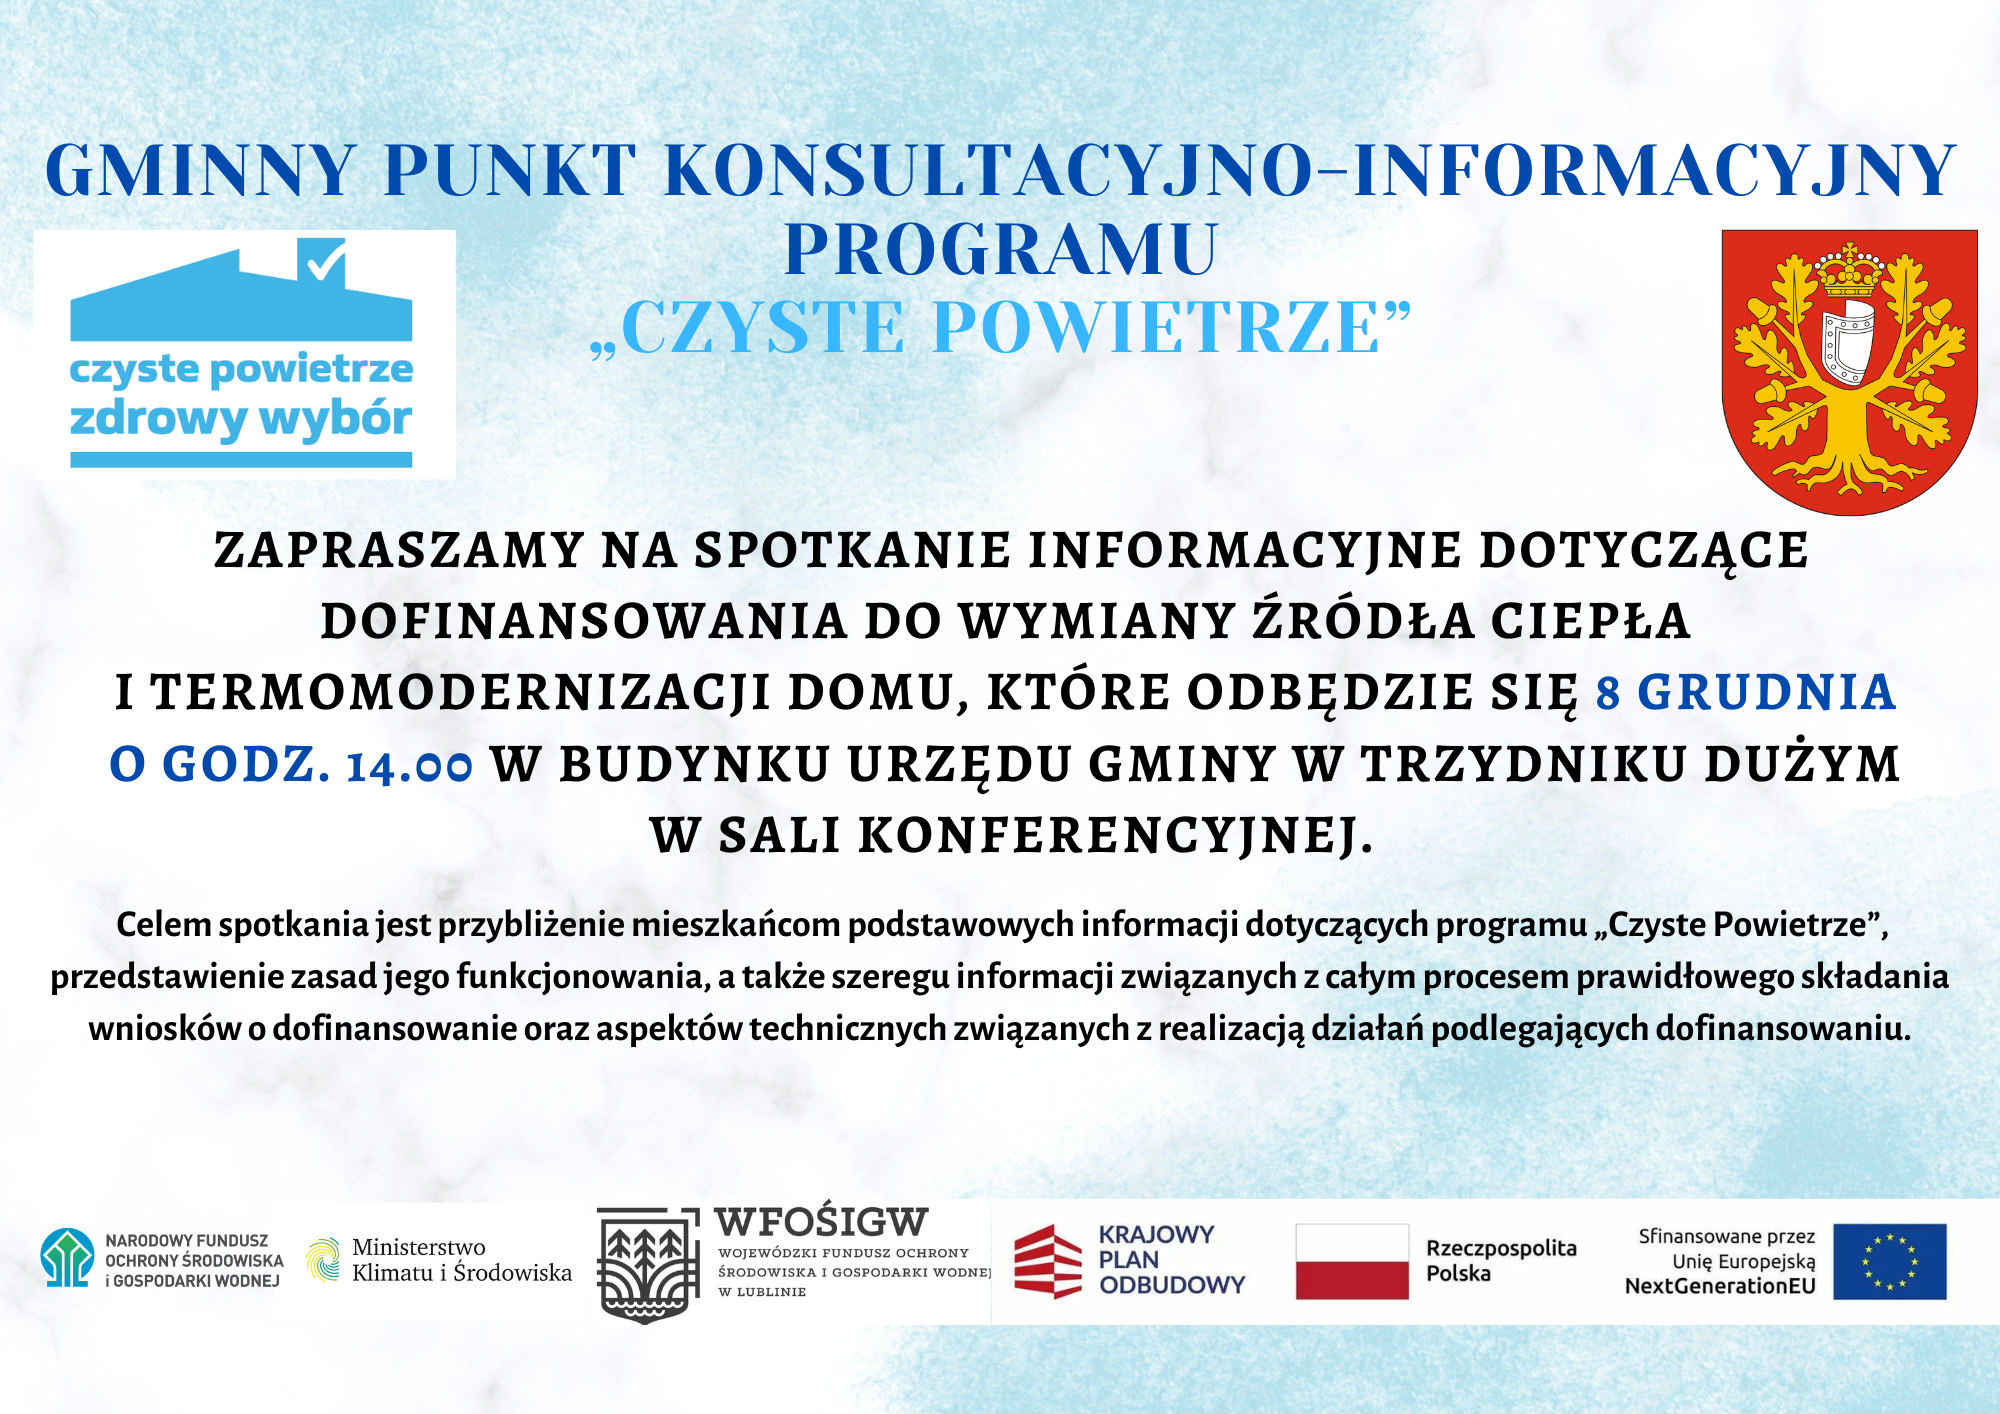 Zdjęcie przedstawia plakat ogłaszający "Gminny Punkt Konsultacyjny Programu 'Czyste Powietrze'" z informacją o spotkaniu dotyczącym termomodernizacji i wymiany źródeł ciepła. Widoczne są logotypy instytucji partnerskich oraz godło Polski.